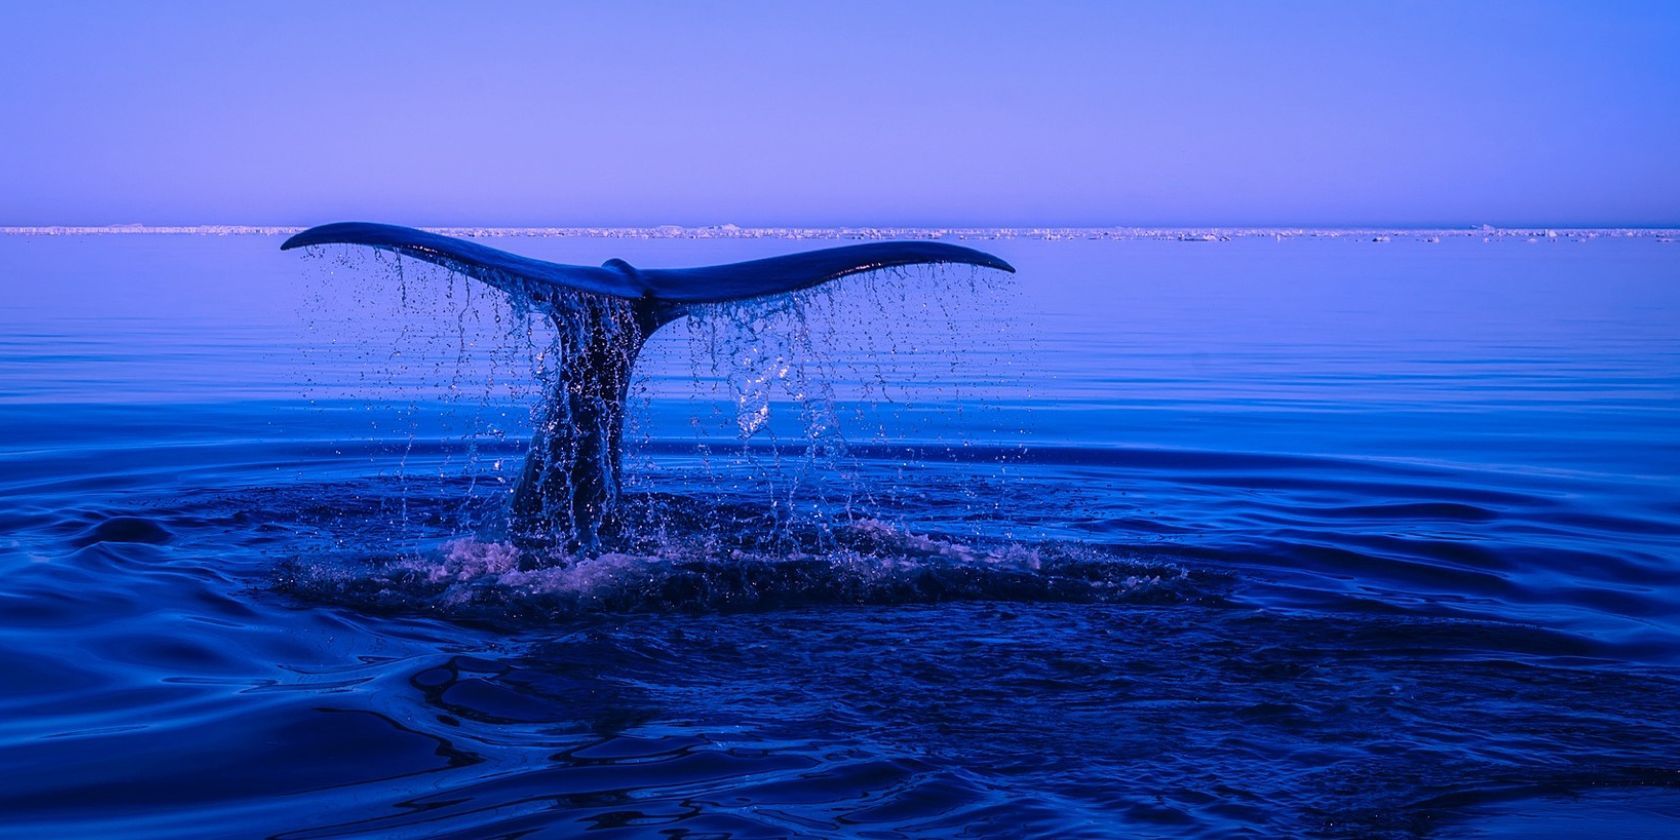 cauda de baleia saindo do oceano